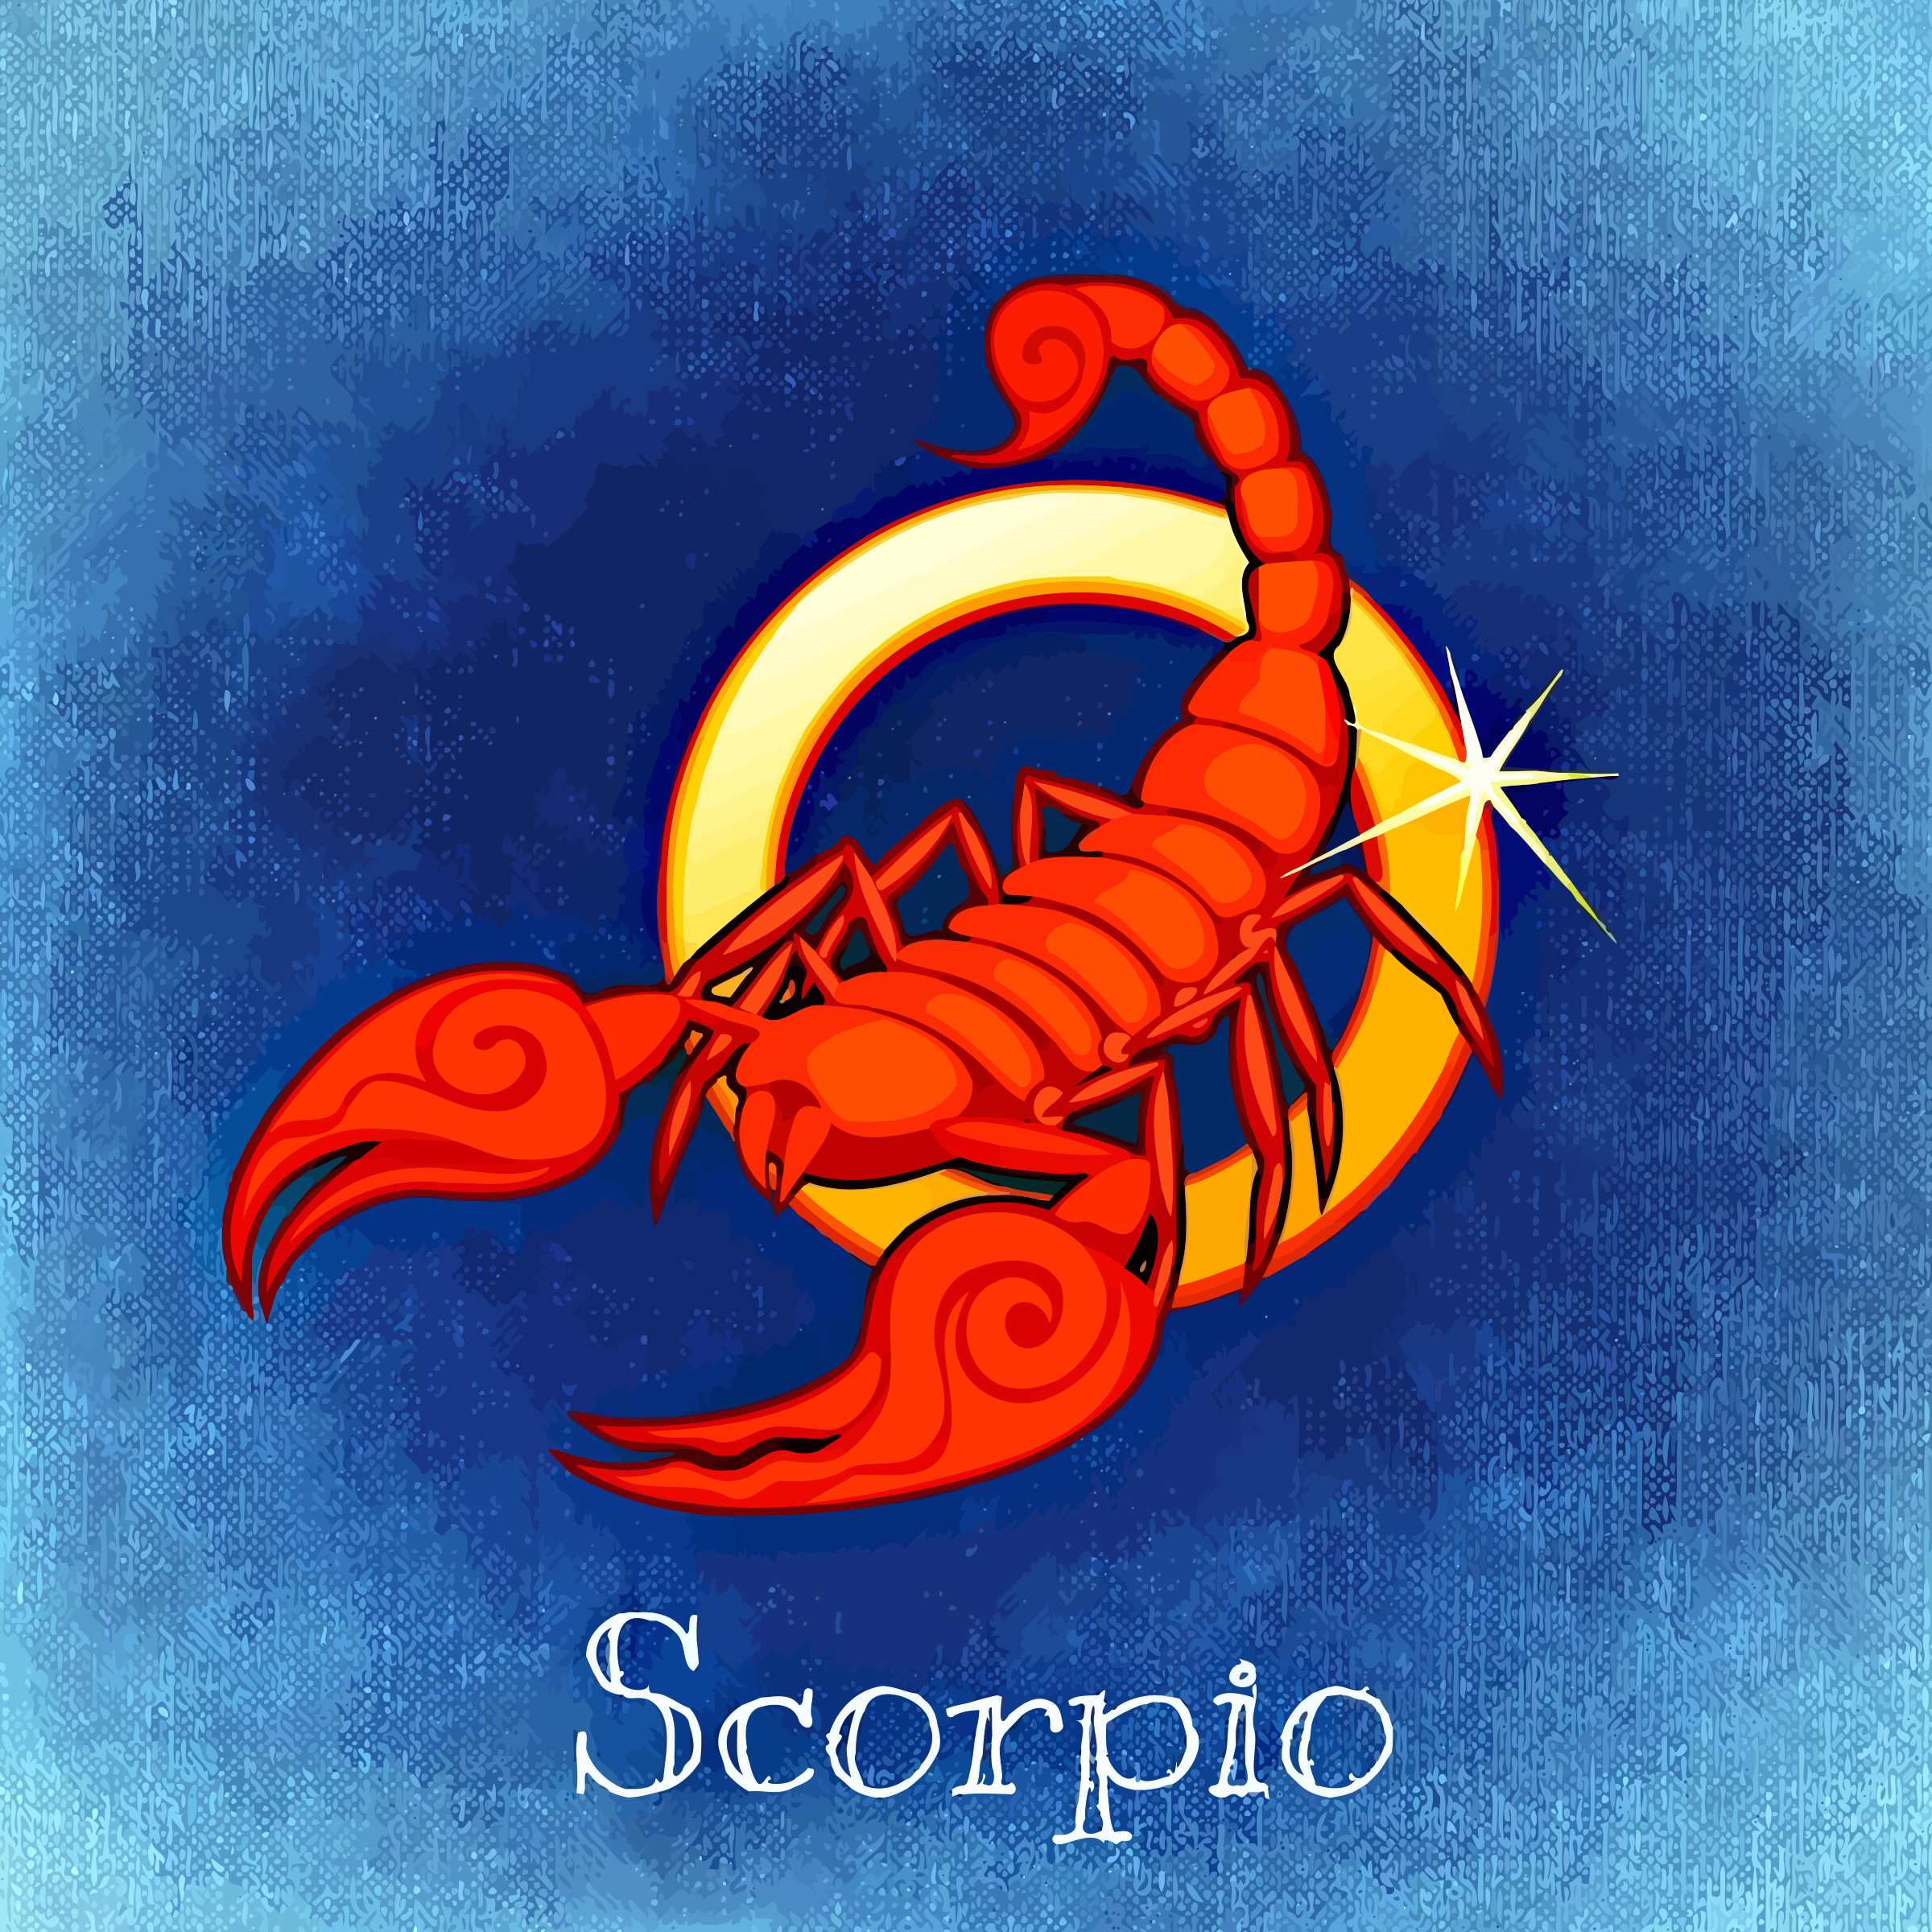 Скорпион зодиак картинки. Знак зодиака Скорпион. Скорпион знак зодиака Скорпион. Скорпион знак зодиака символ. Скорпион рисунок.